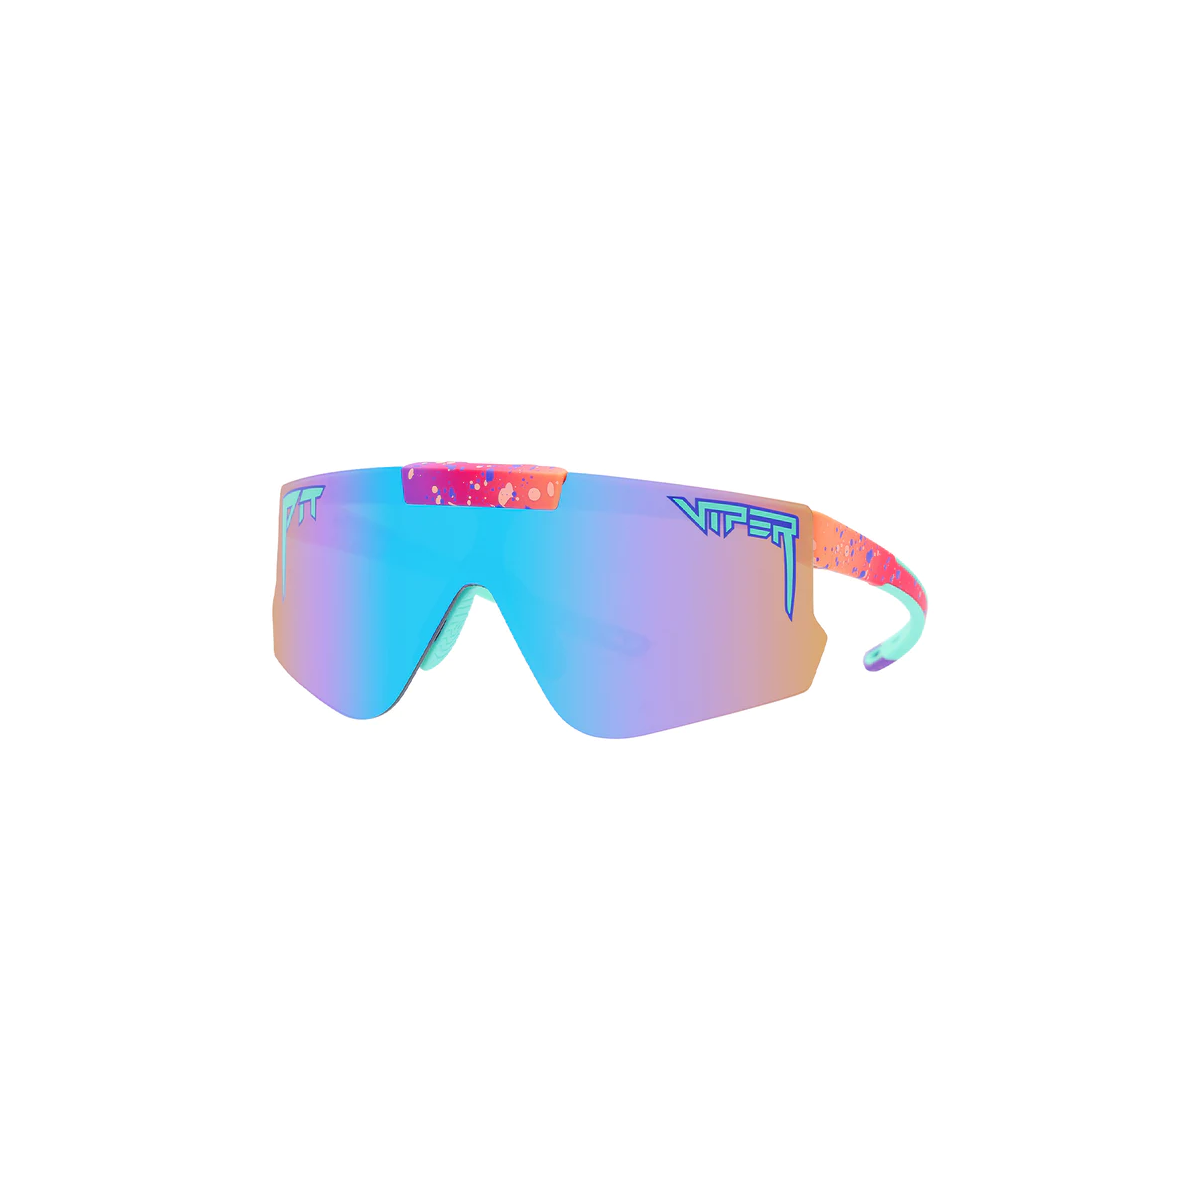 lateral de las Gafas de sol Pit Viper Flip-Offs The Copacabana polarizadas color rosa y azul